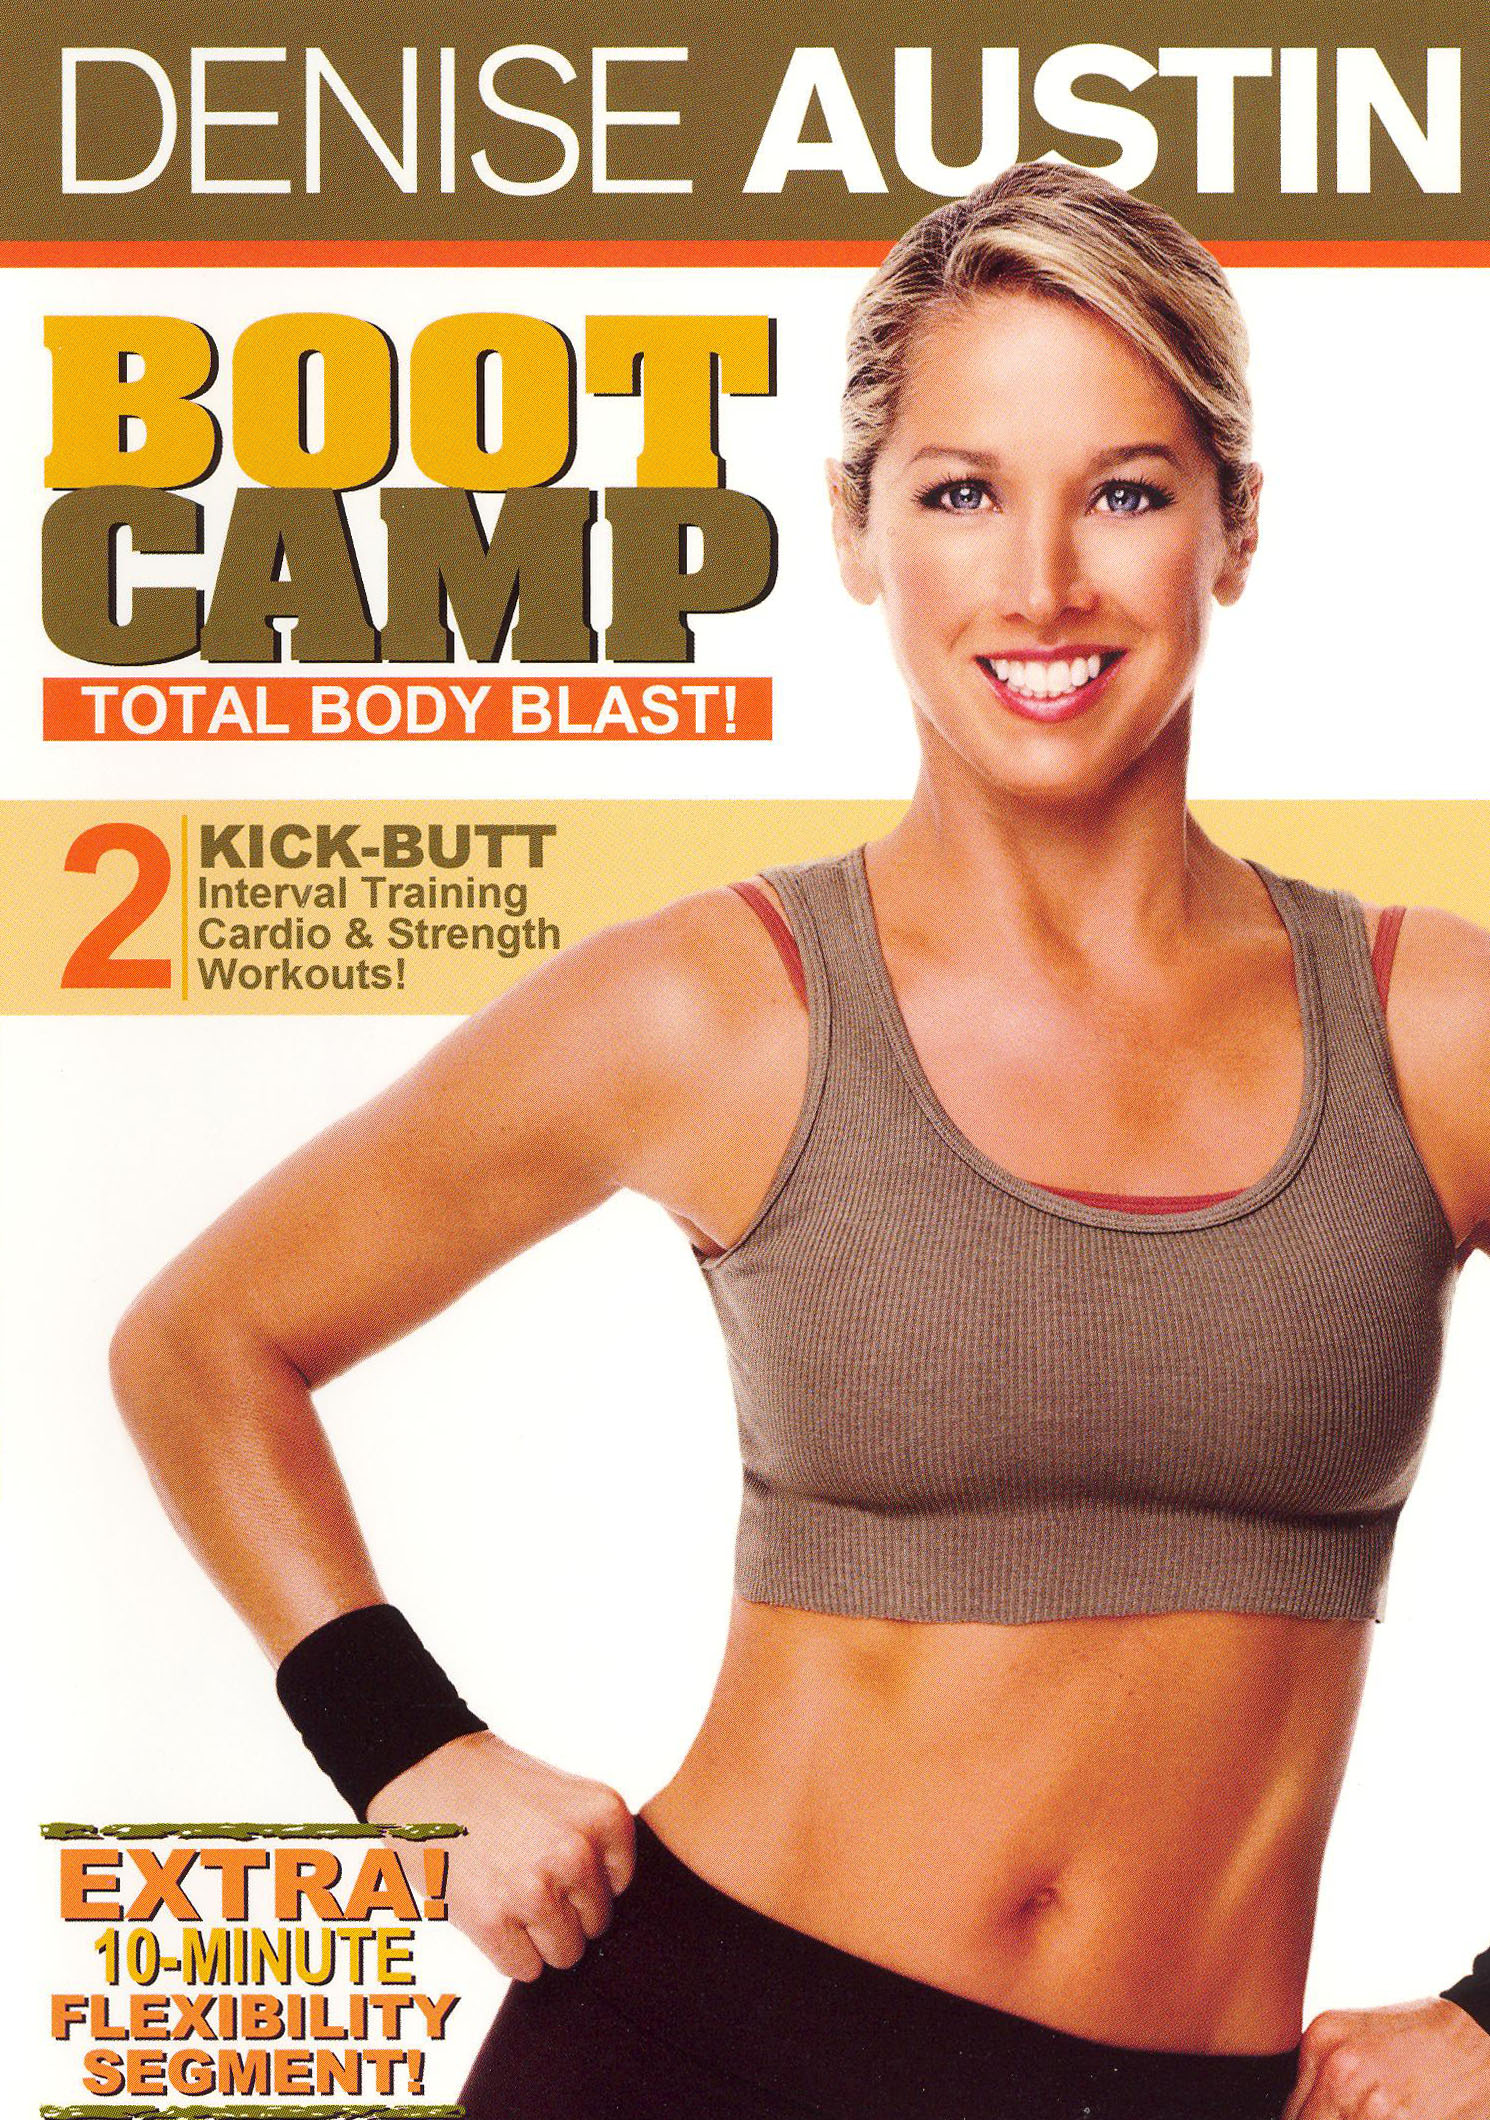 Denise Austin Boot Camp Total Body Blast Dvd Best Buy